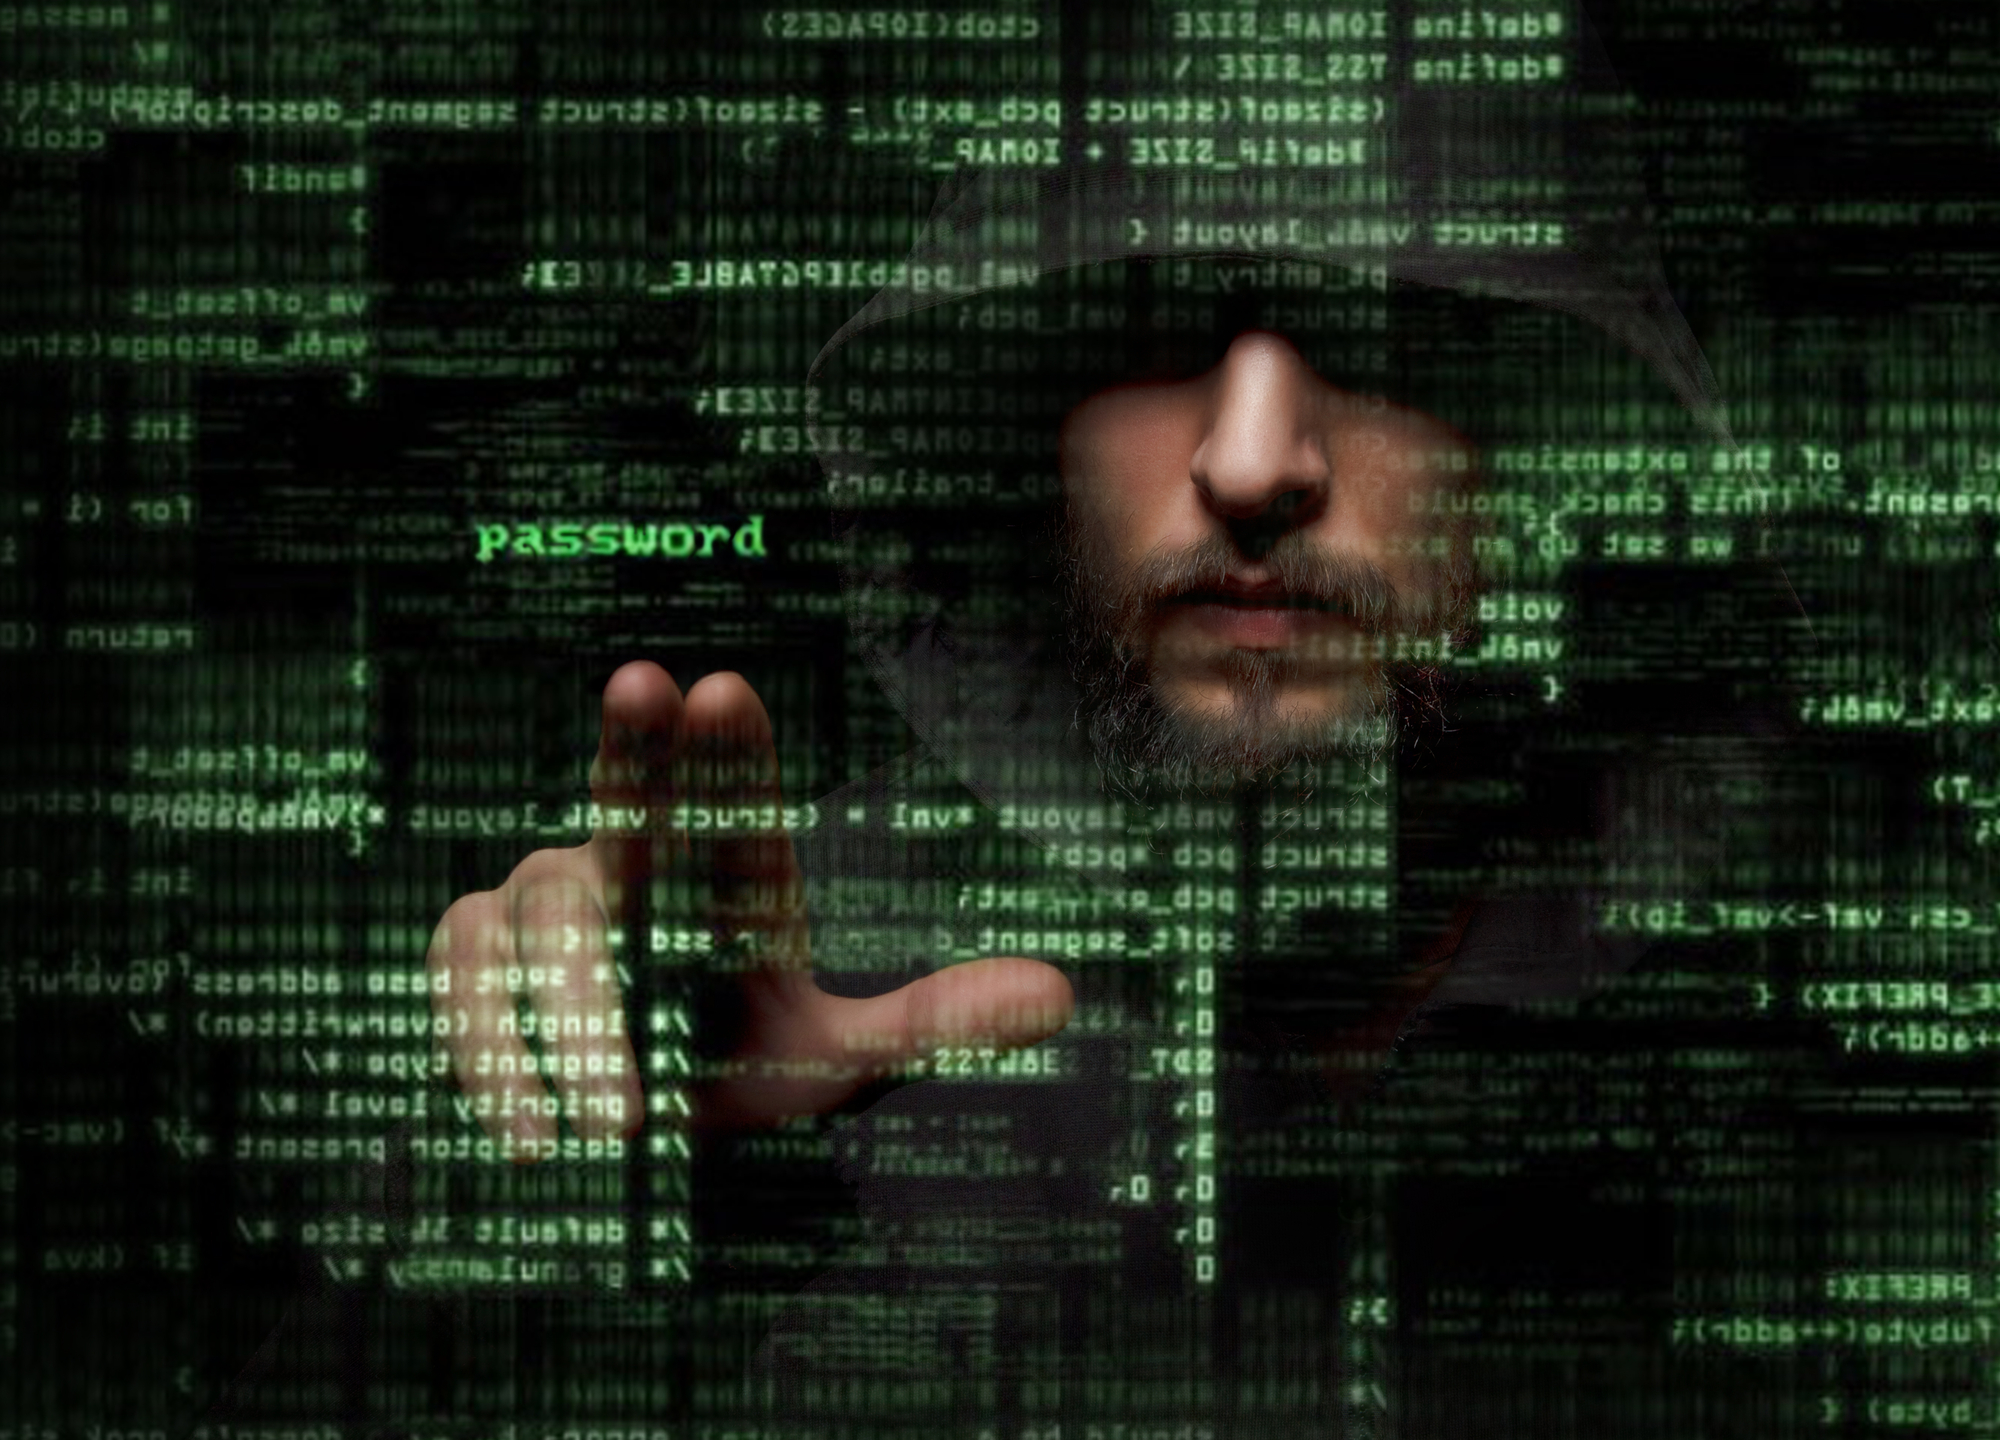 Los ciberdelitos en auge: ¿Cómo protegerse y qué hacer si es víctima?